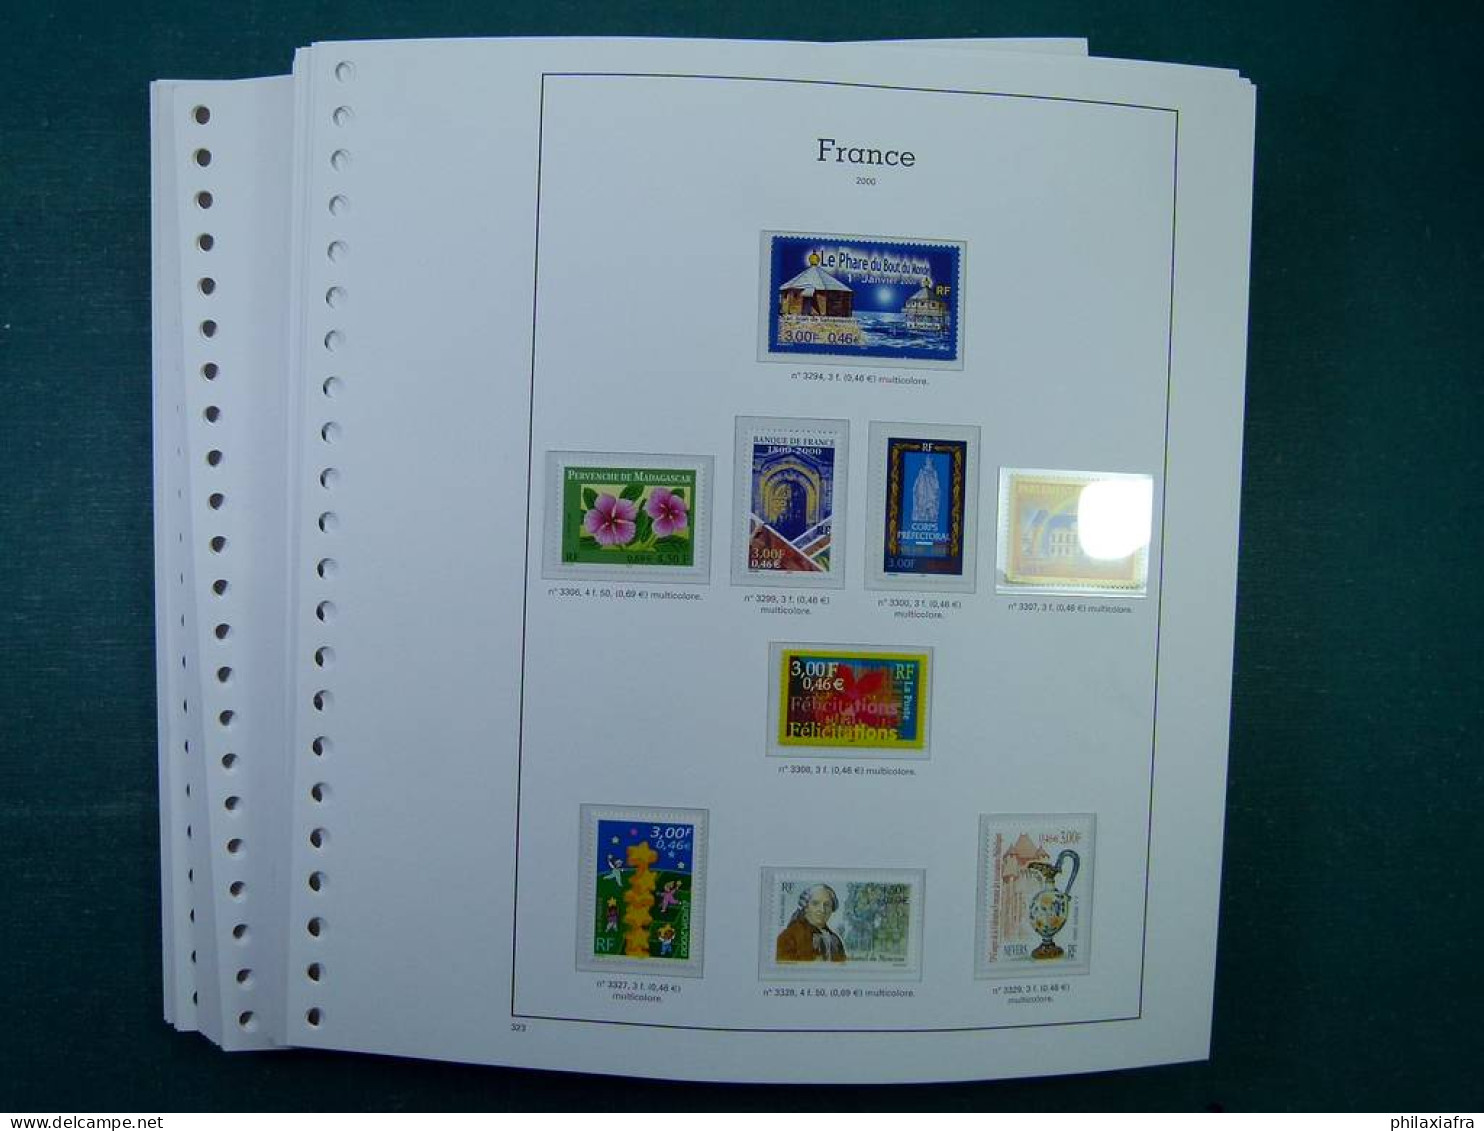 Collection France, Pages D'album, Timbres, Livret BF Neufs ** De 2000 à 2004. - Collections